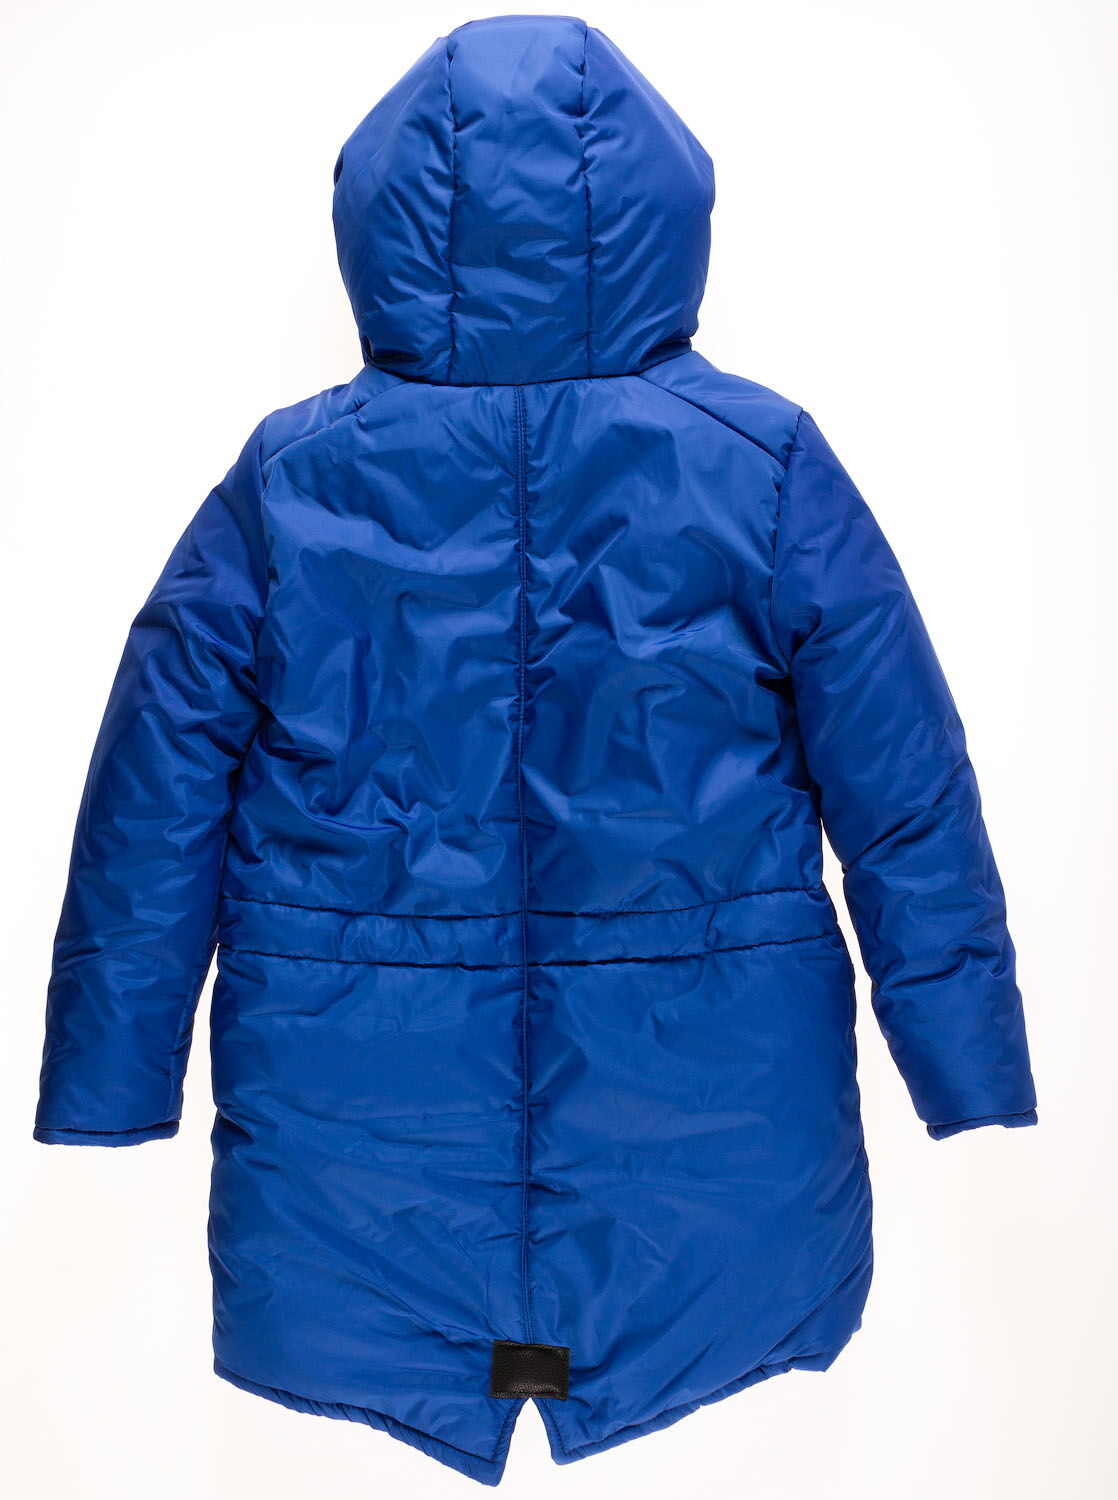 Куртка удлиненная зимняя для девочки Одягайко синяя 20061О - размеры